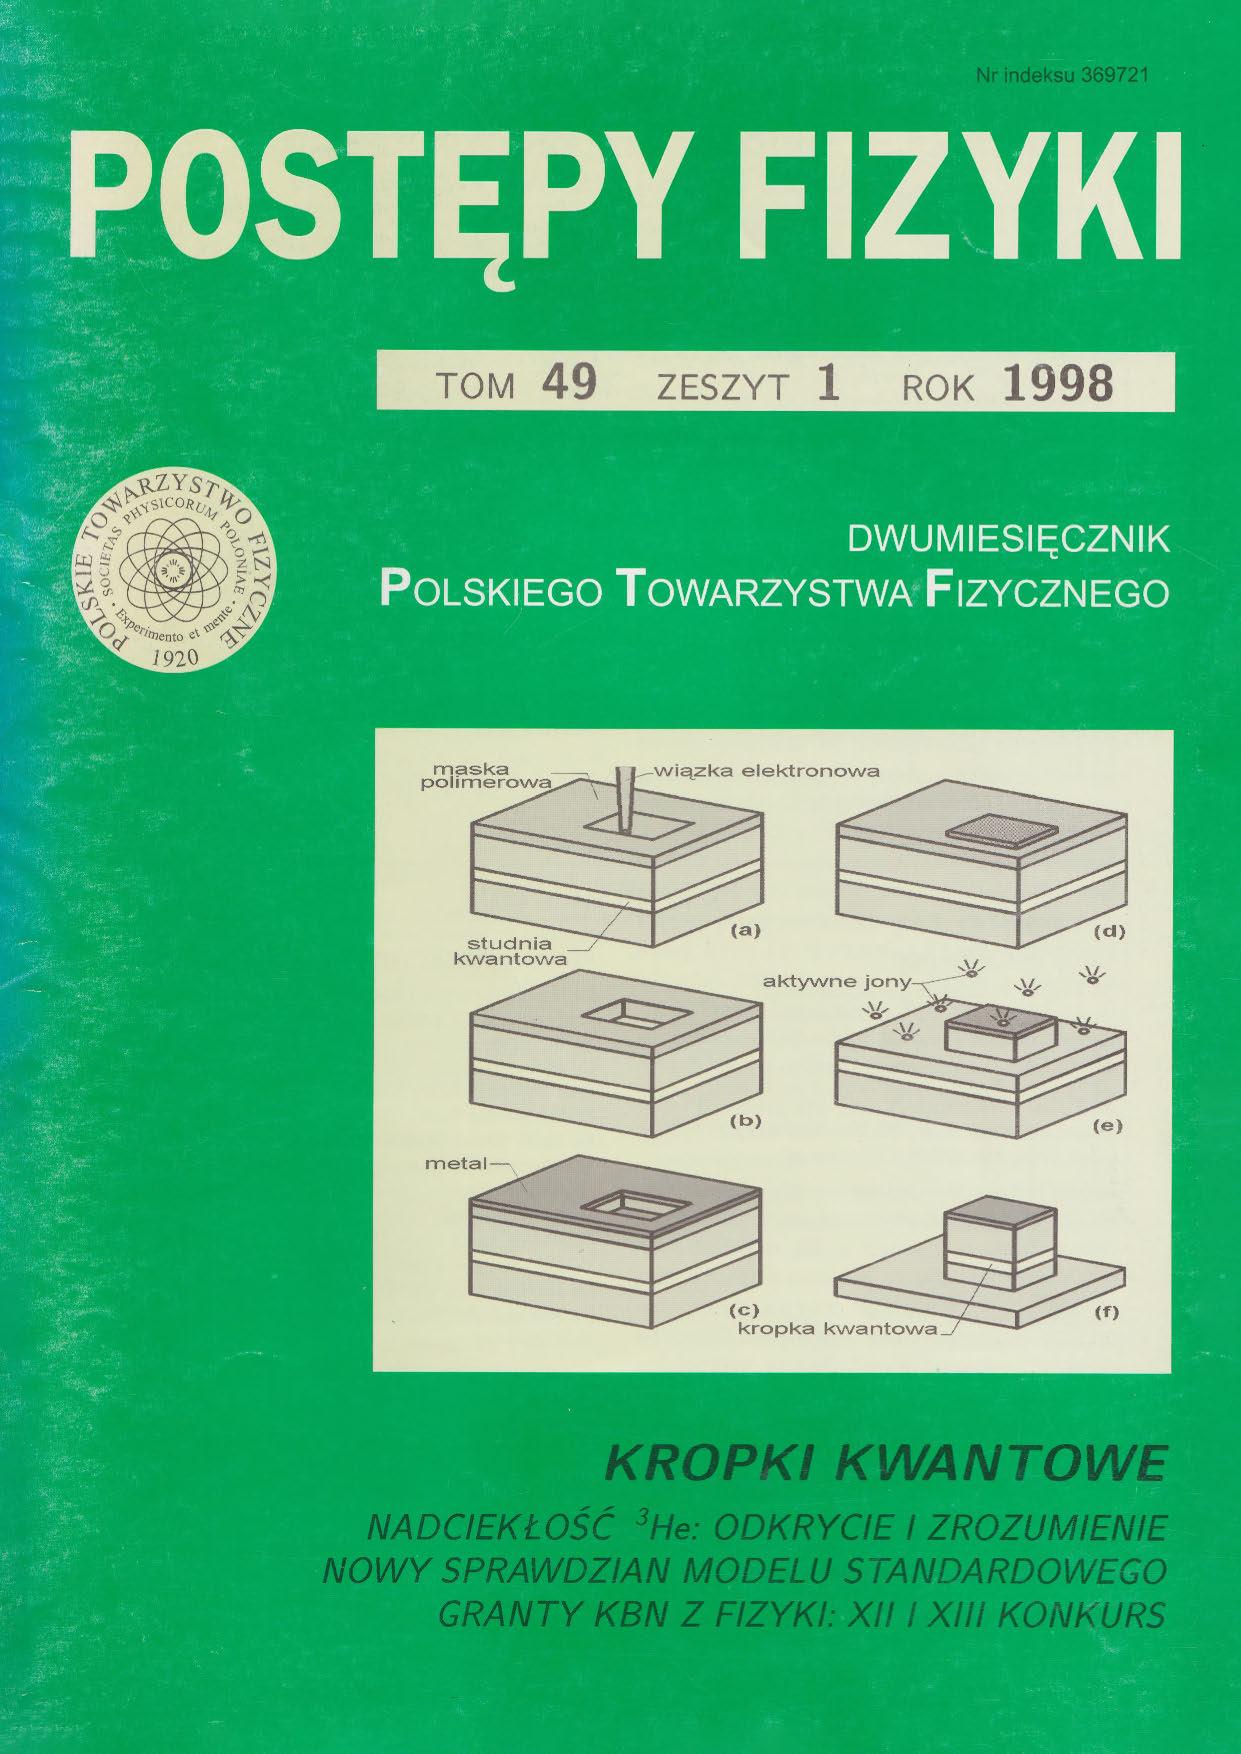 Postępy Fizyki 49 (1) 1998